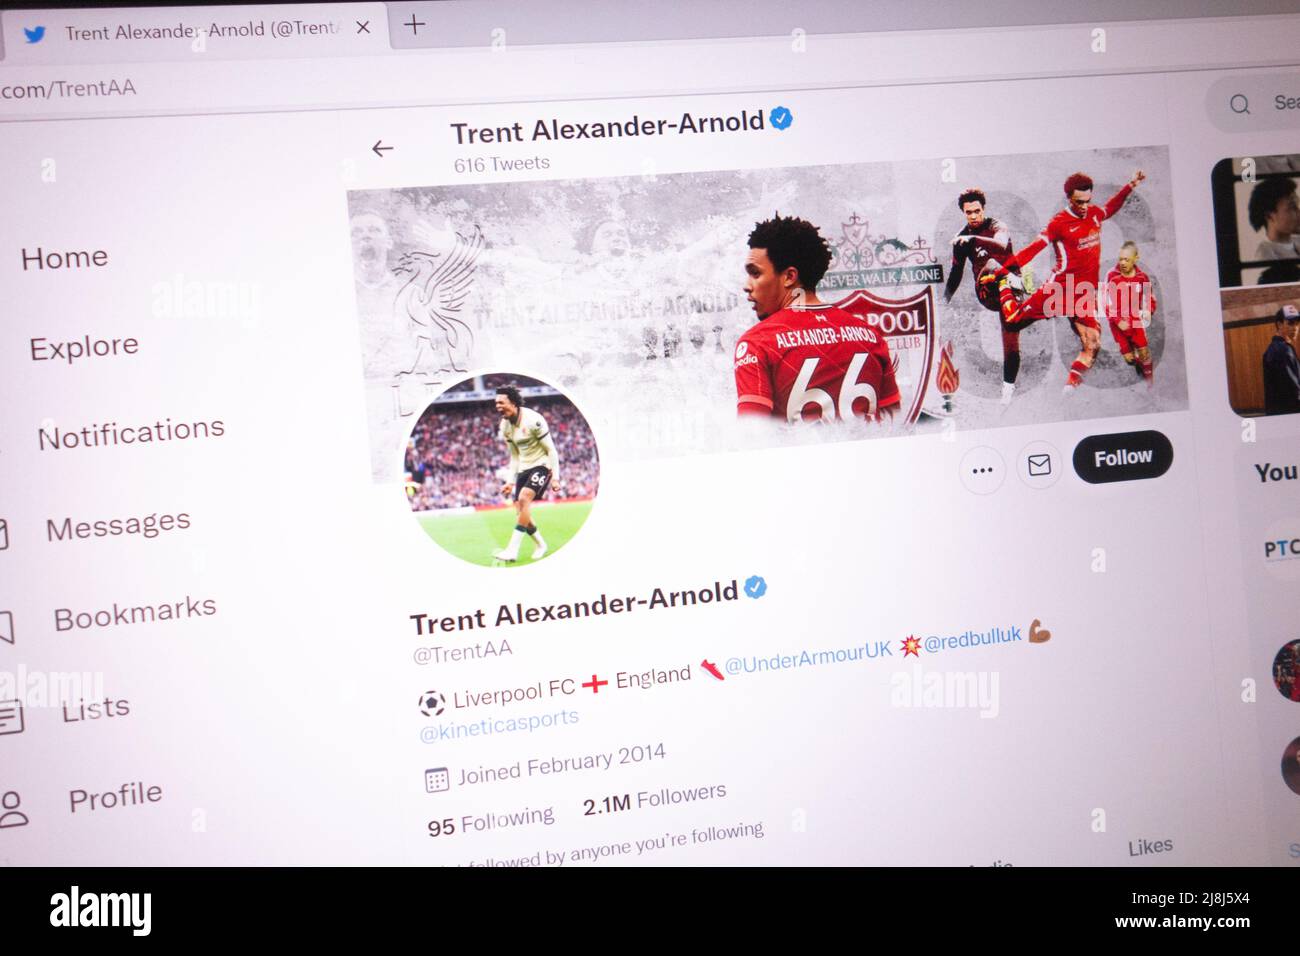 KONSKIE, POLONIA - 14 maggio 2022: Account Twitter ufficiale Trent Alexander-Arnold visualizzato sullo schermo del laptop Foto Stock